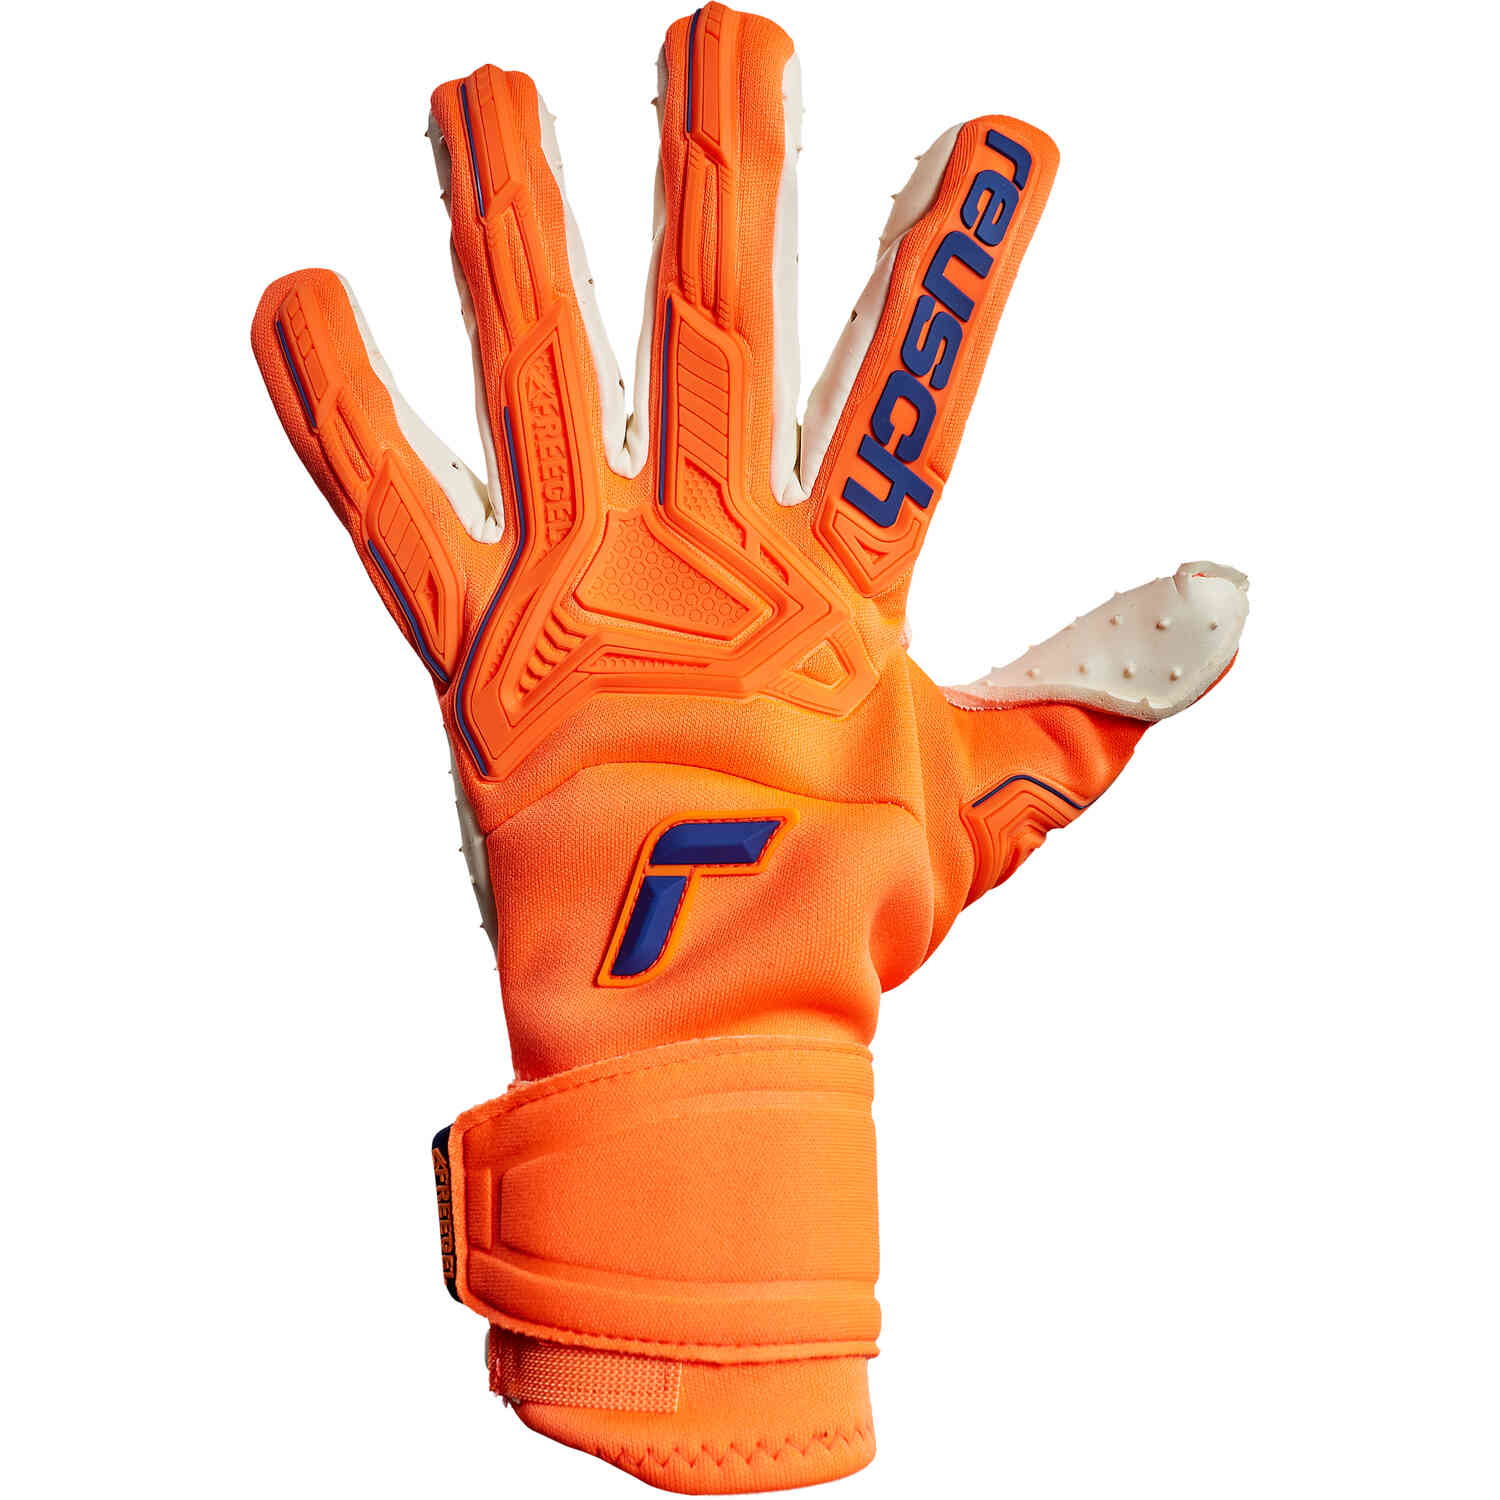 Reusch Attrakt Freegel Speedbump Goalkeeper Gloves - Shocking Orange & Blue  - Soccer Master